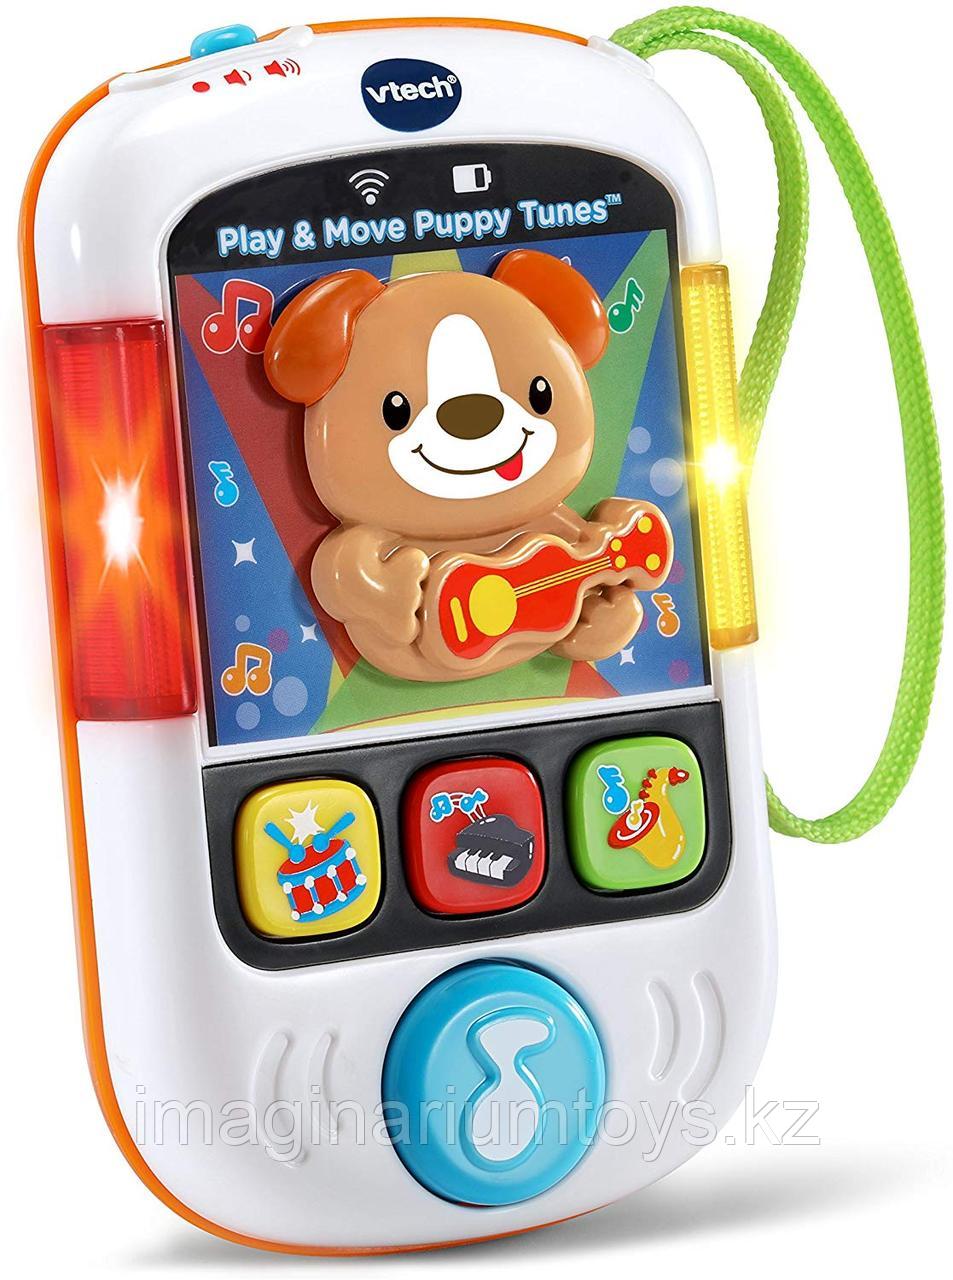 Интерактивная развивающая игрушка Телефон VTech цвет белый, фото 1